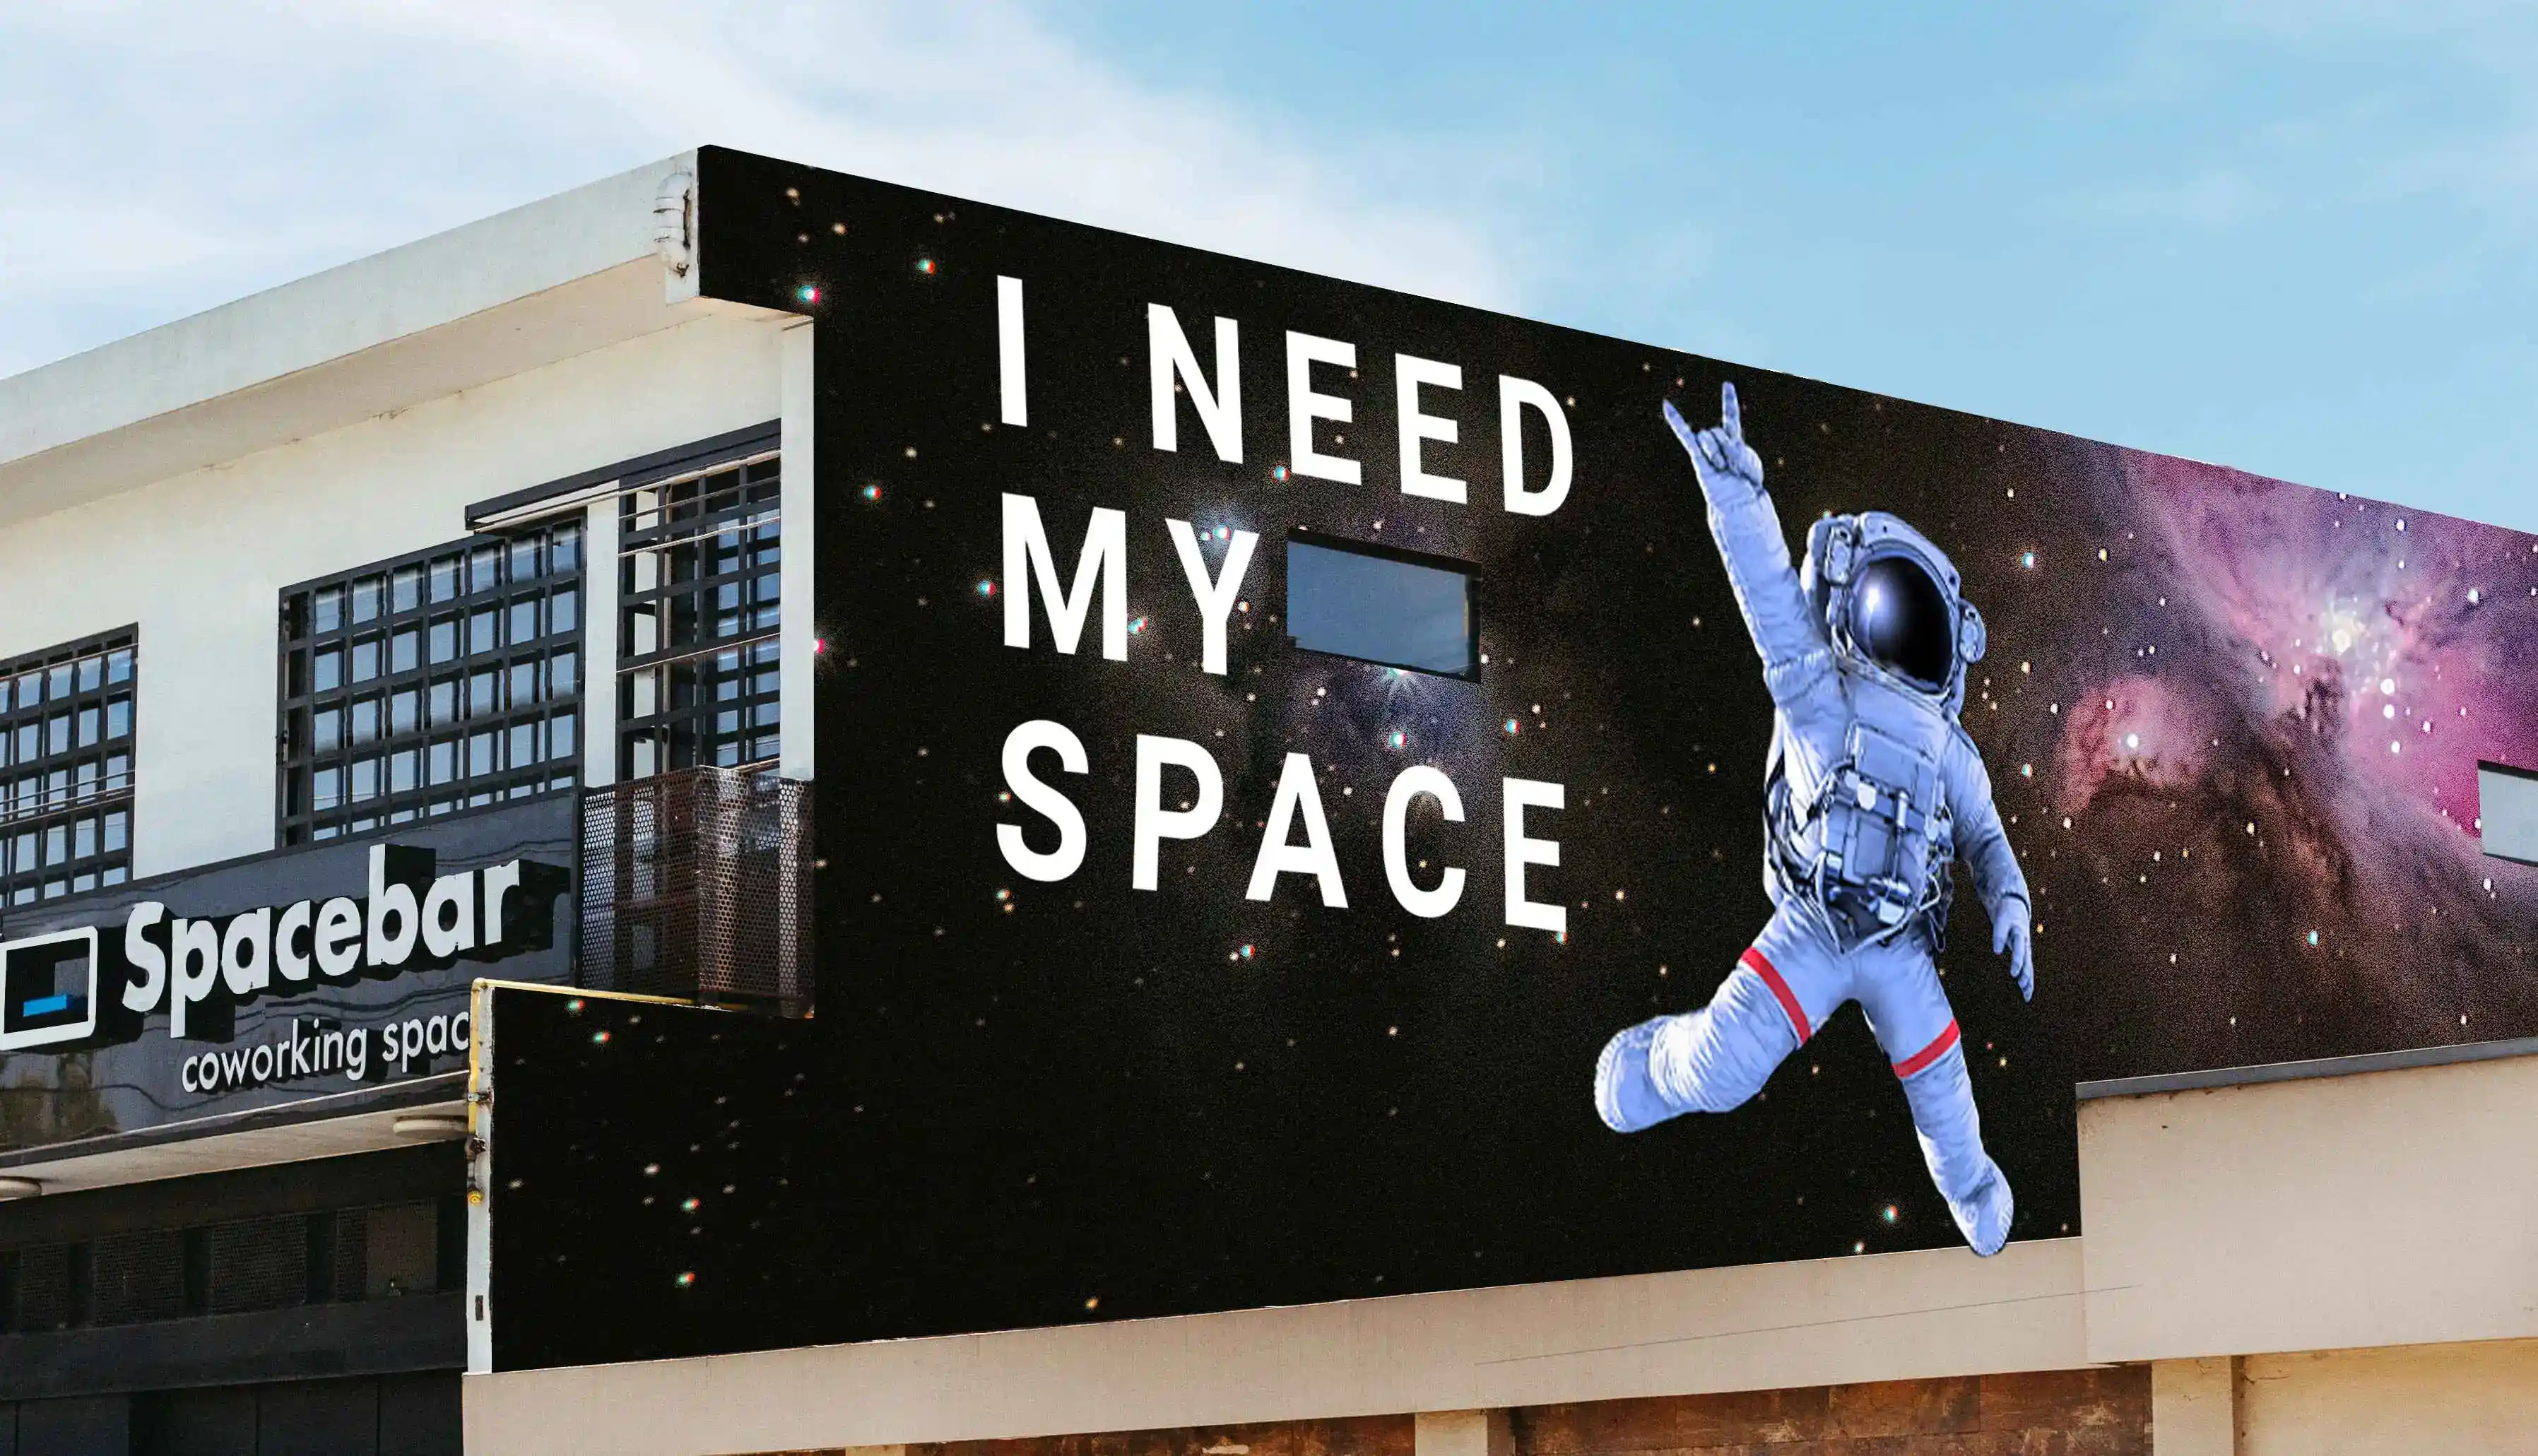 Mural que representa a un astronauta flotando en el espacio con la frase "I NEED MY SPACE" y el logotipo de Spacebar coworking space.